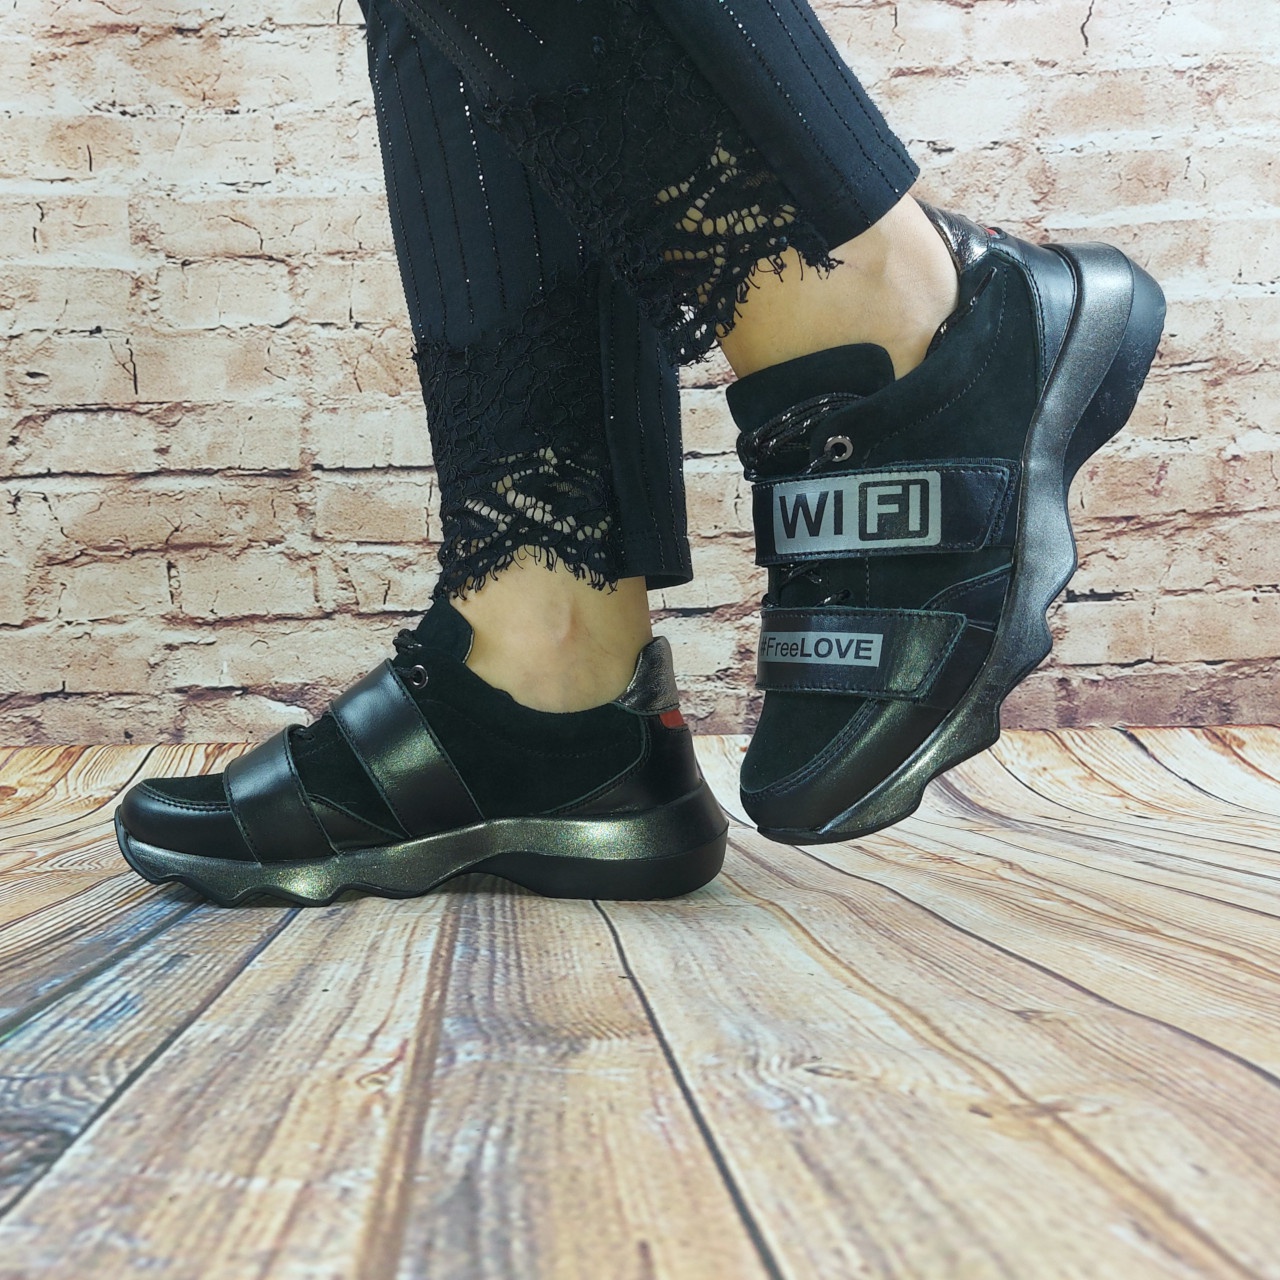 Туфли женские спортивные Eclipse 580-28 чёрные кожа-замша шнурок + 2 липучки